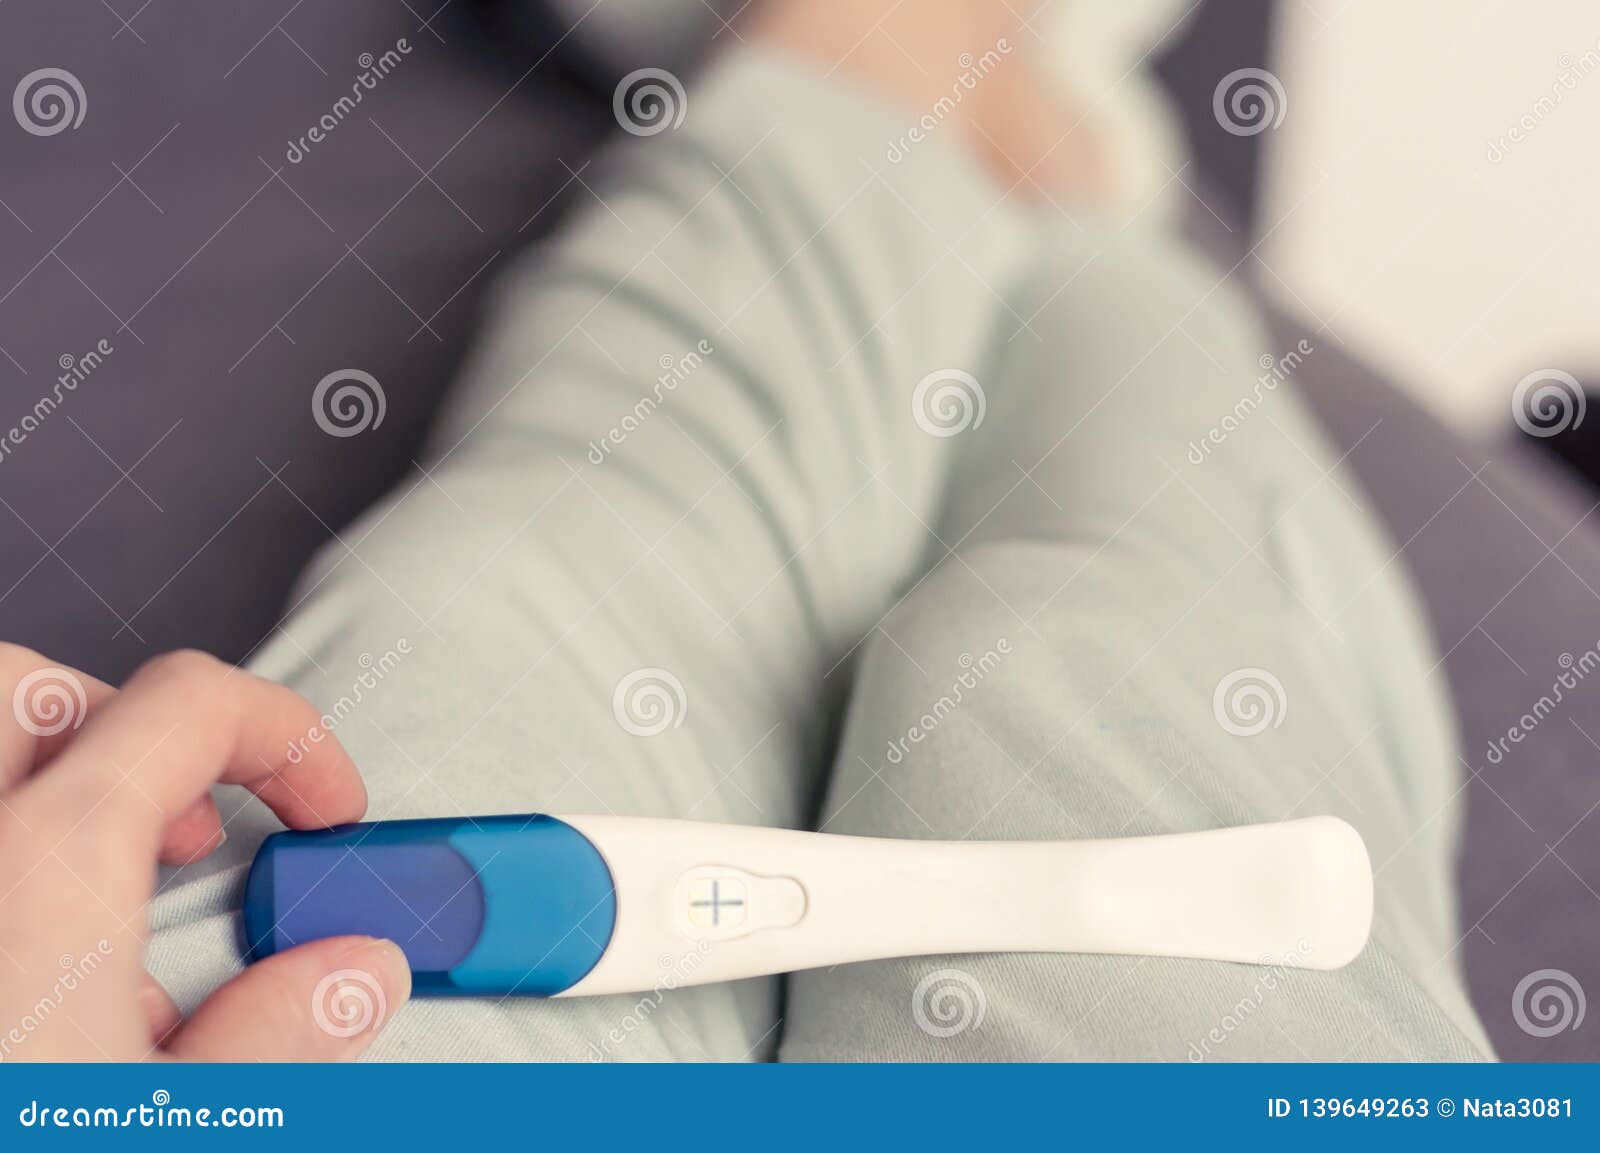 Тест на беременность в руках у девушки. Тест на беременность Life. Тест на беременность в руке девушки. Девушка держит тест на беременность. Девушка с тестом на беременность в руках.